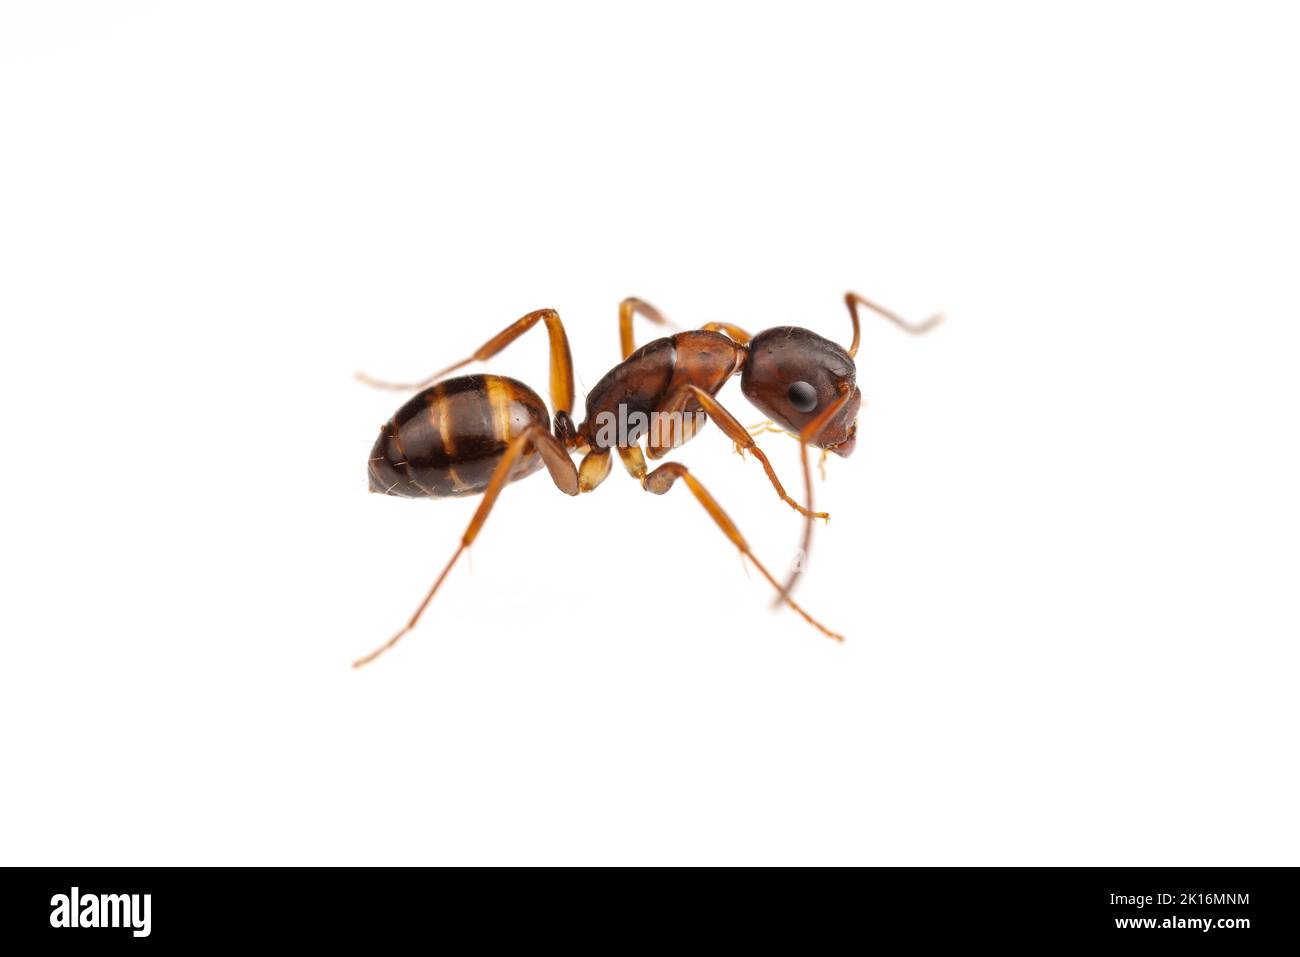 Falegname ANT (Camponotus subarbatus) isolato su sfondo bianco. Foto Stock